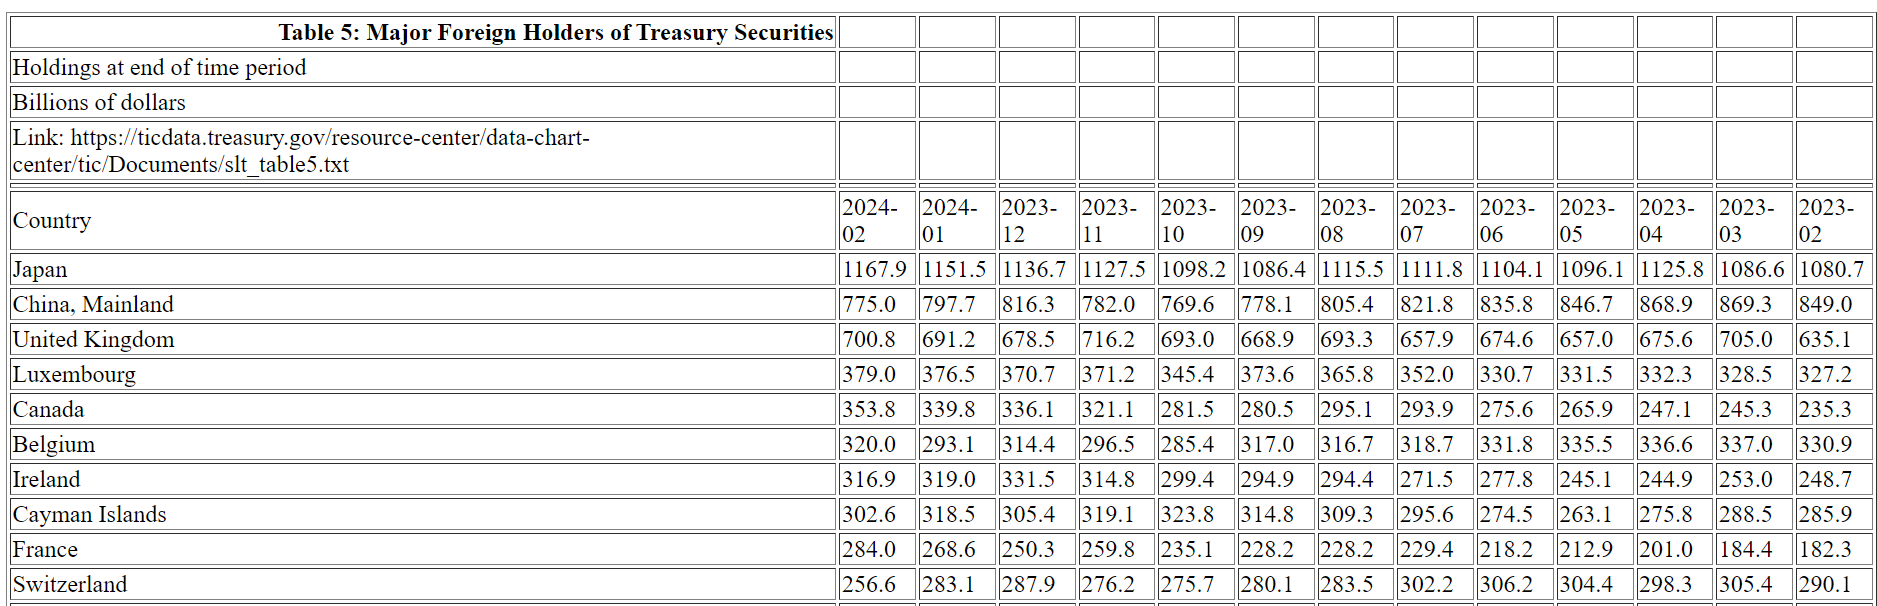 Principaux détenteurs étrangers de titres du Trésor : (Source : ticdata.treasury.gov)